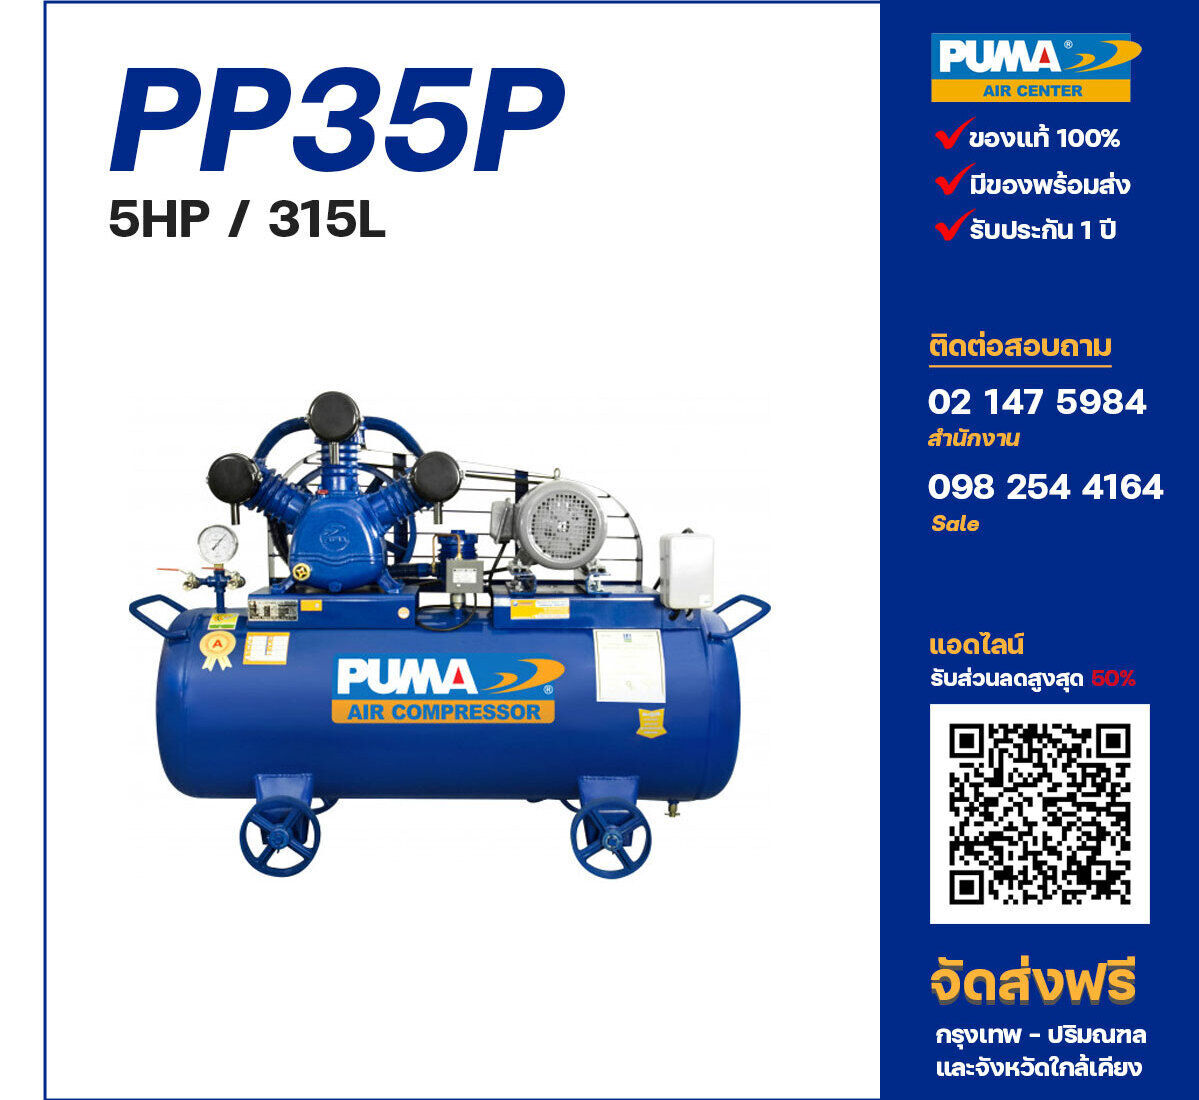 ปั๊มลมพูม่า PUMA PP35P-PPM220V/380V ปั๊มลมลูกสูบ ขนาด 3 สูบ 5 แรงม้า 315 ลิตร PUMA พร้อมมอเตอร์ PUMA ไฟ 220V/380V ส่งฟรี กรุงเทพฯ-ปริมณฑล รับประกัน 1 ปี